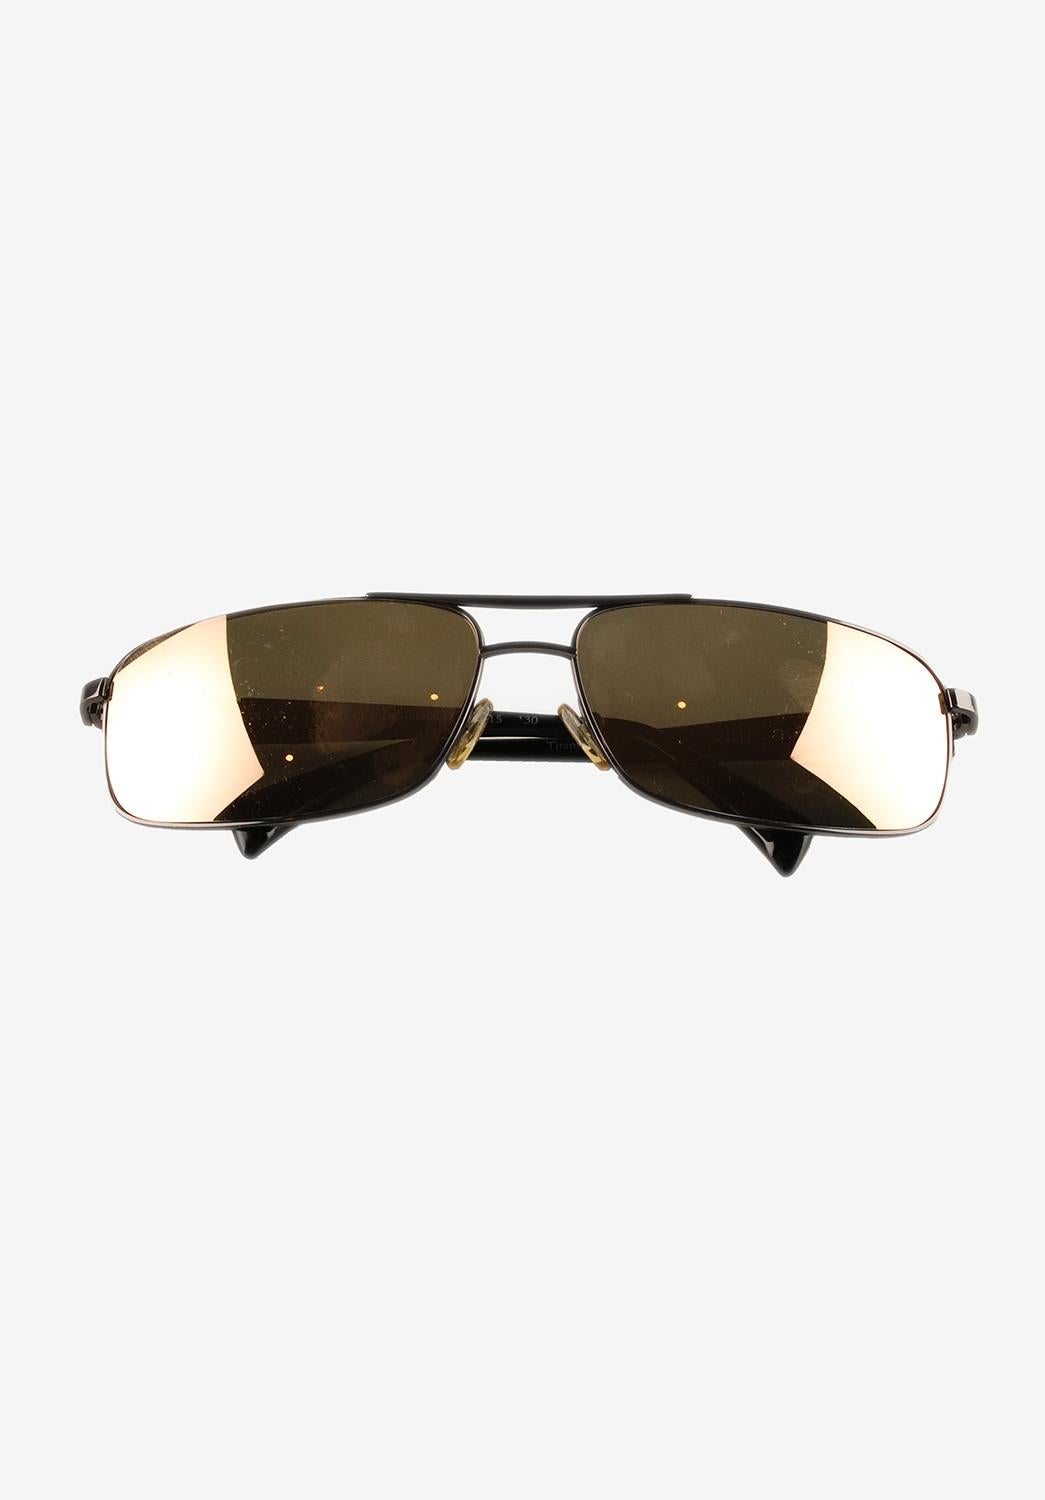 L'article mis en vente est 100% authentique Zilli Titanium Sunglasses
Couleur : Noir
(La couleur réelle peut varier légèrement en raison de l'interprétation individuelle de l'écran de l'ordinateur).
Cette veste est un article de grande qualité. Note